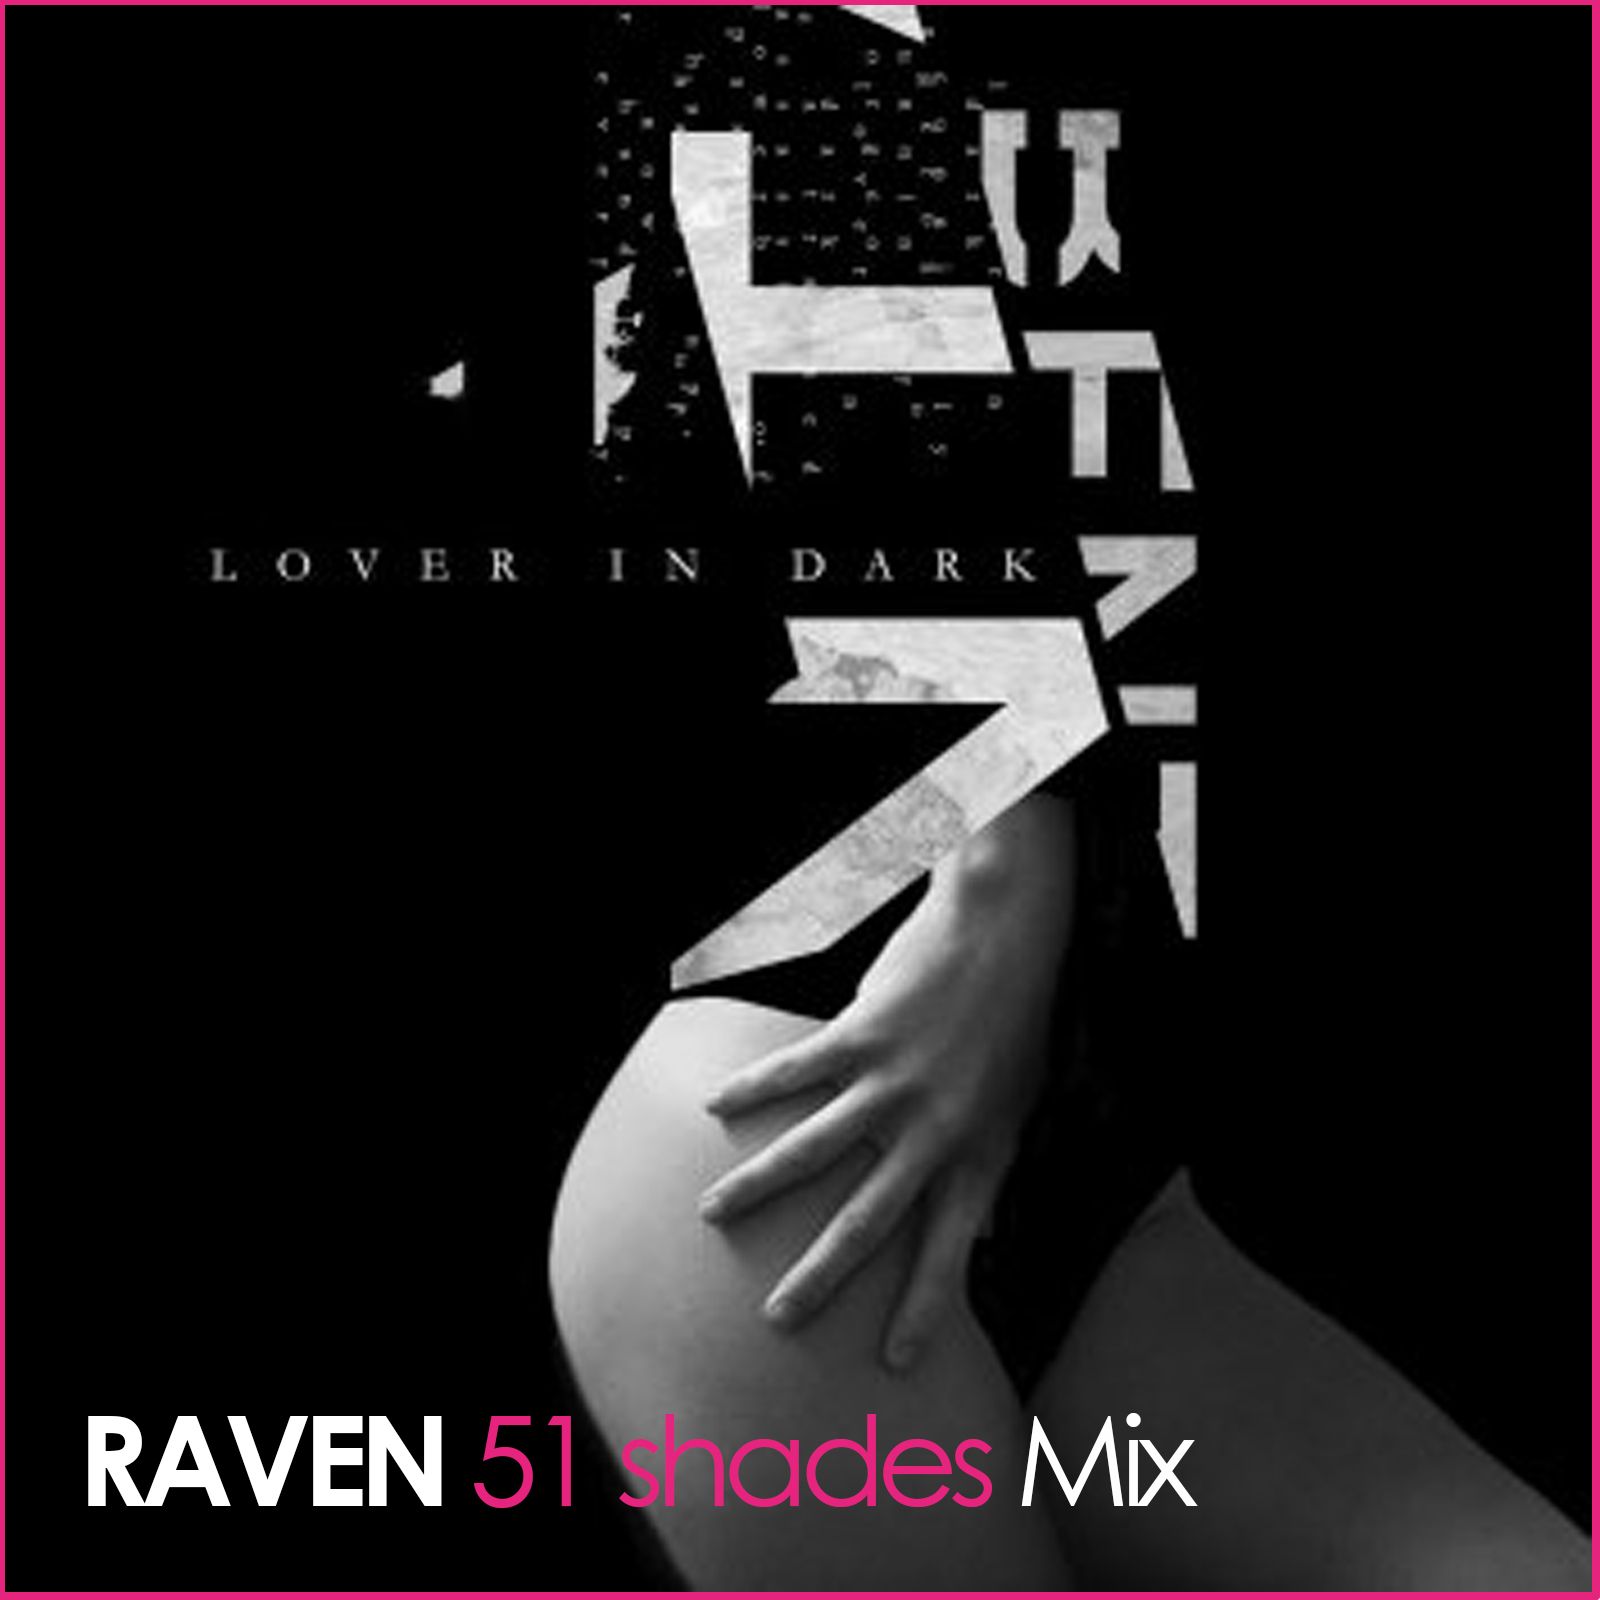 CD Cover Benta - Lover in Dark (RAVEN 51 shades Mix).jpg